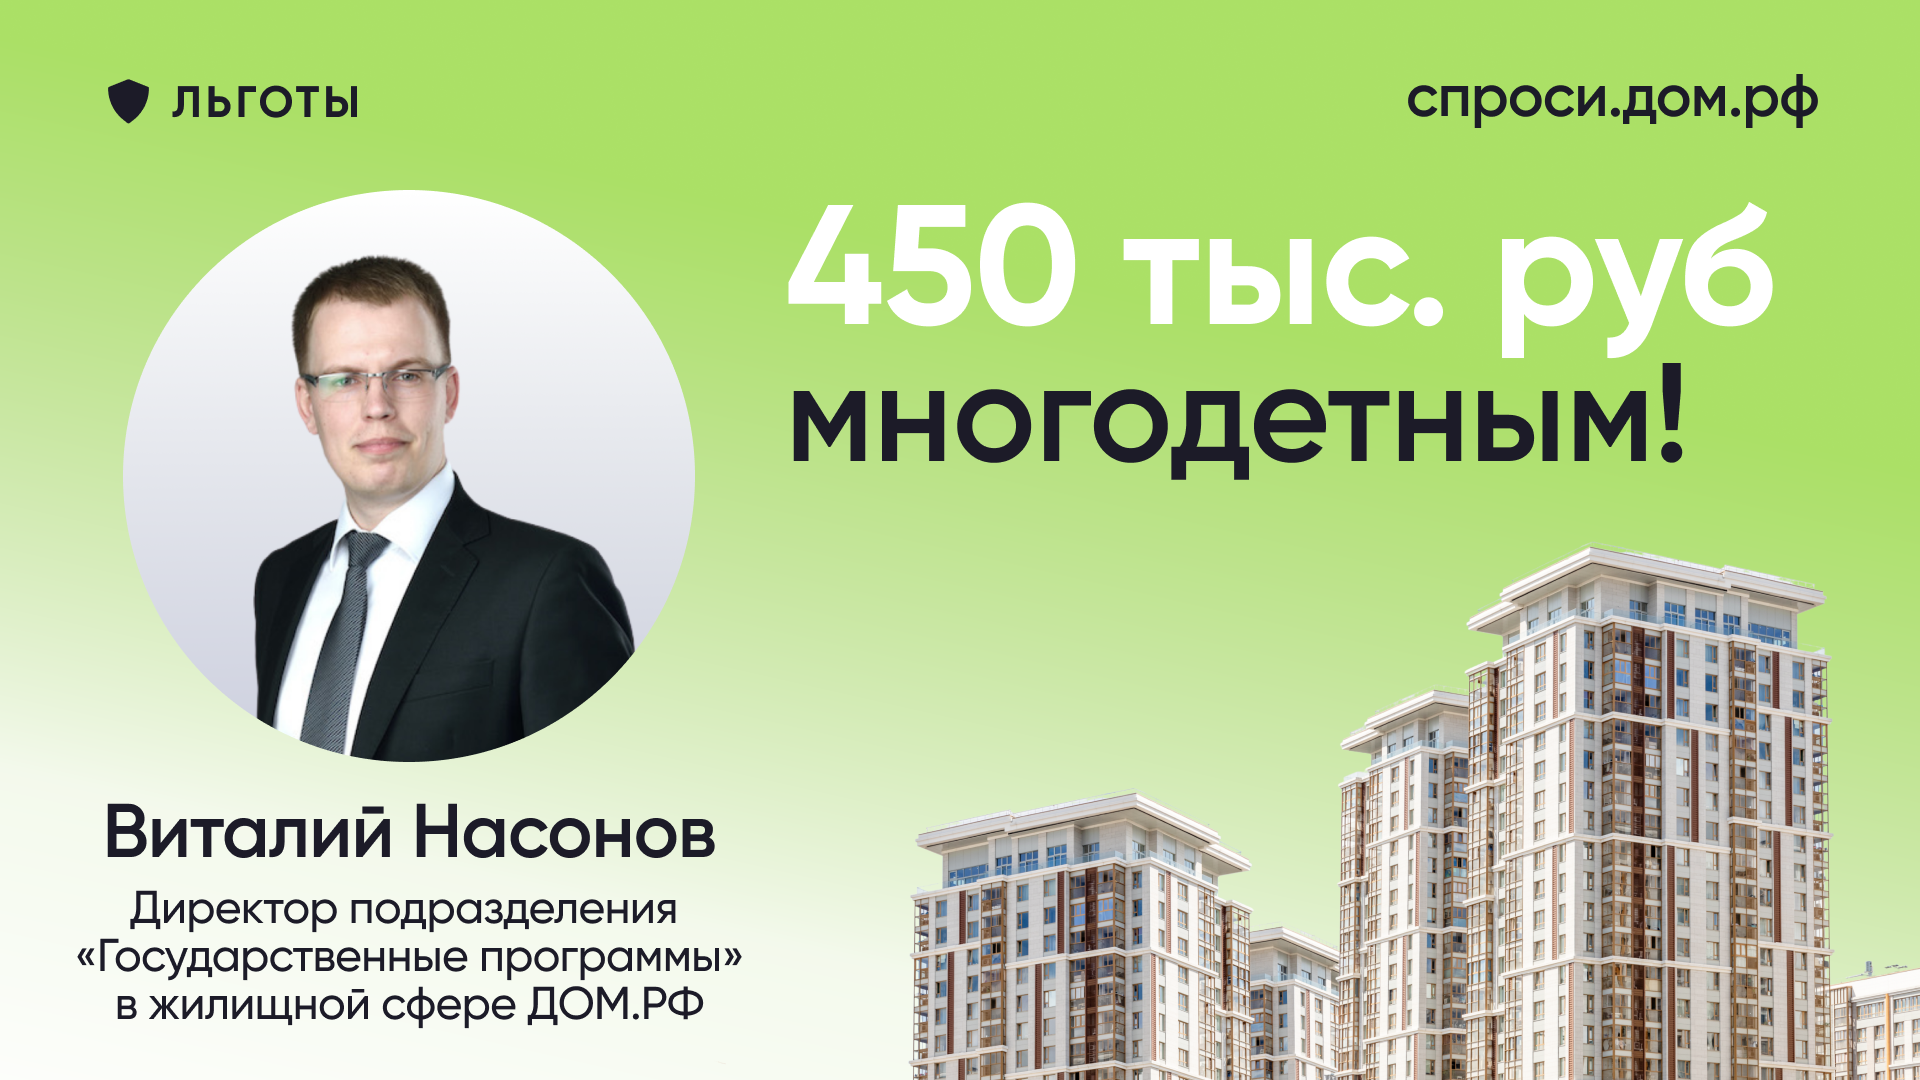 Как многодетным семьям получить 450 тыс. рублей на погашение ипотеки?